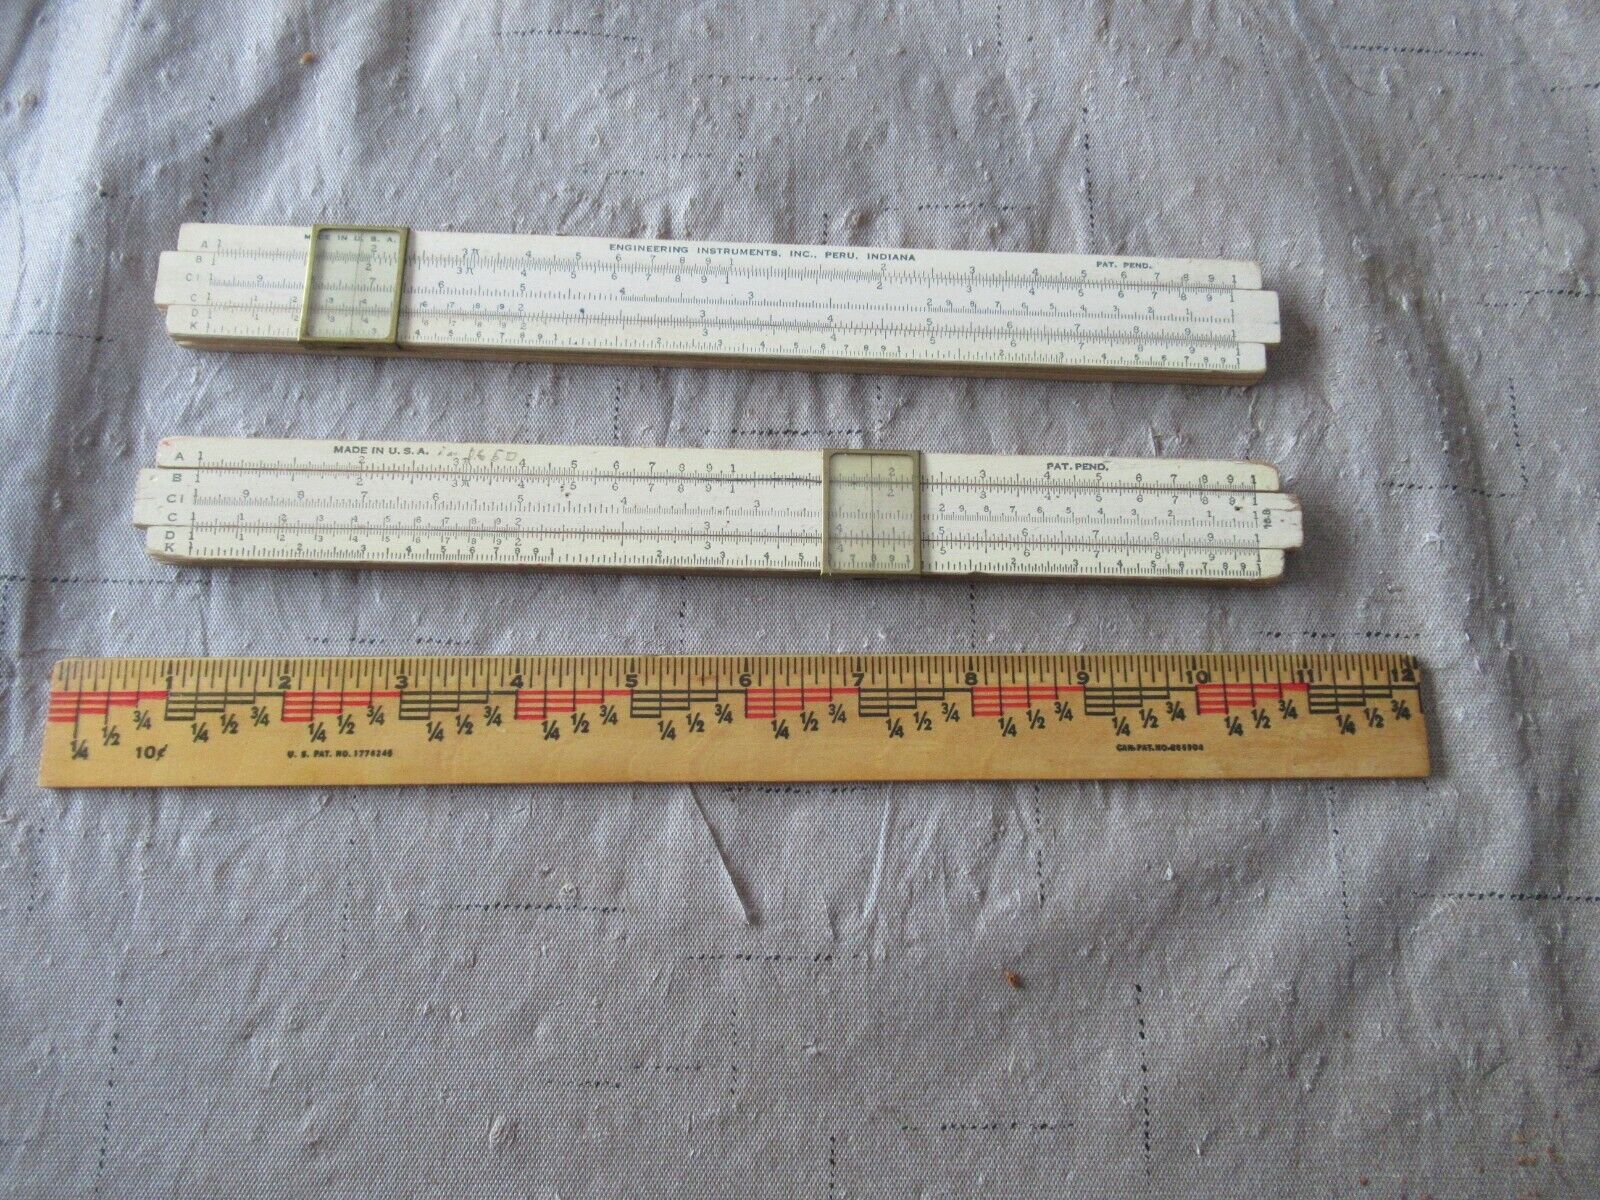 Pair of Vintage Slide Rules, One is Engineering Instruments, Inc. 